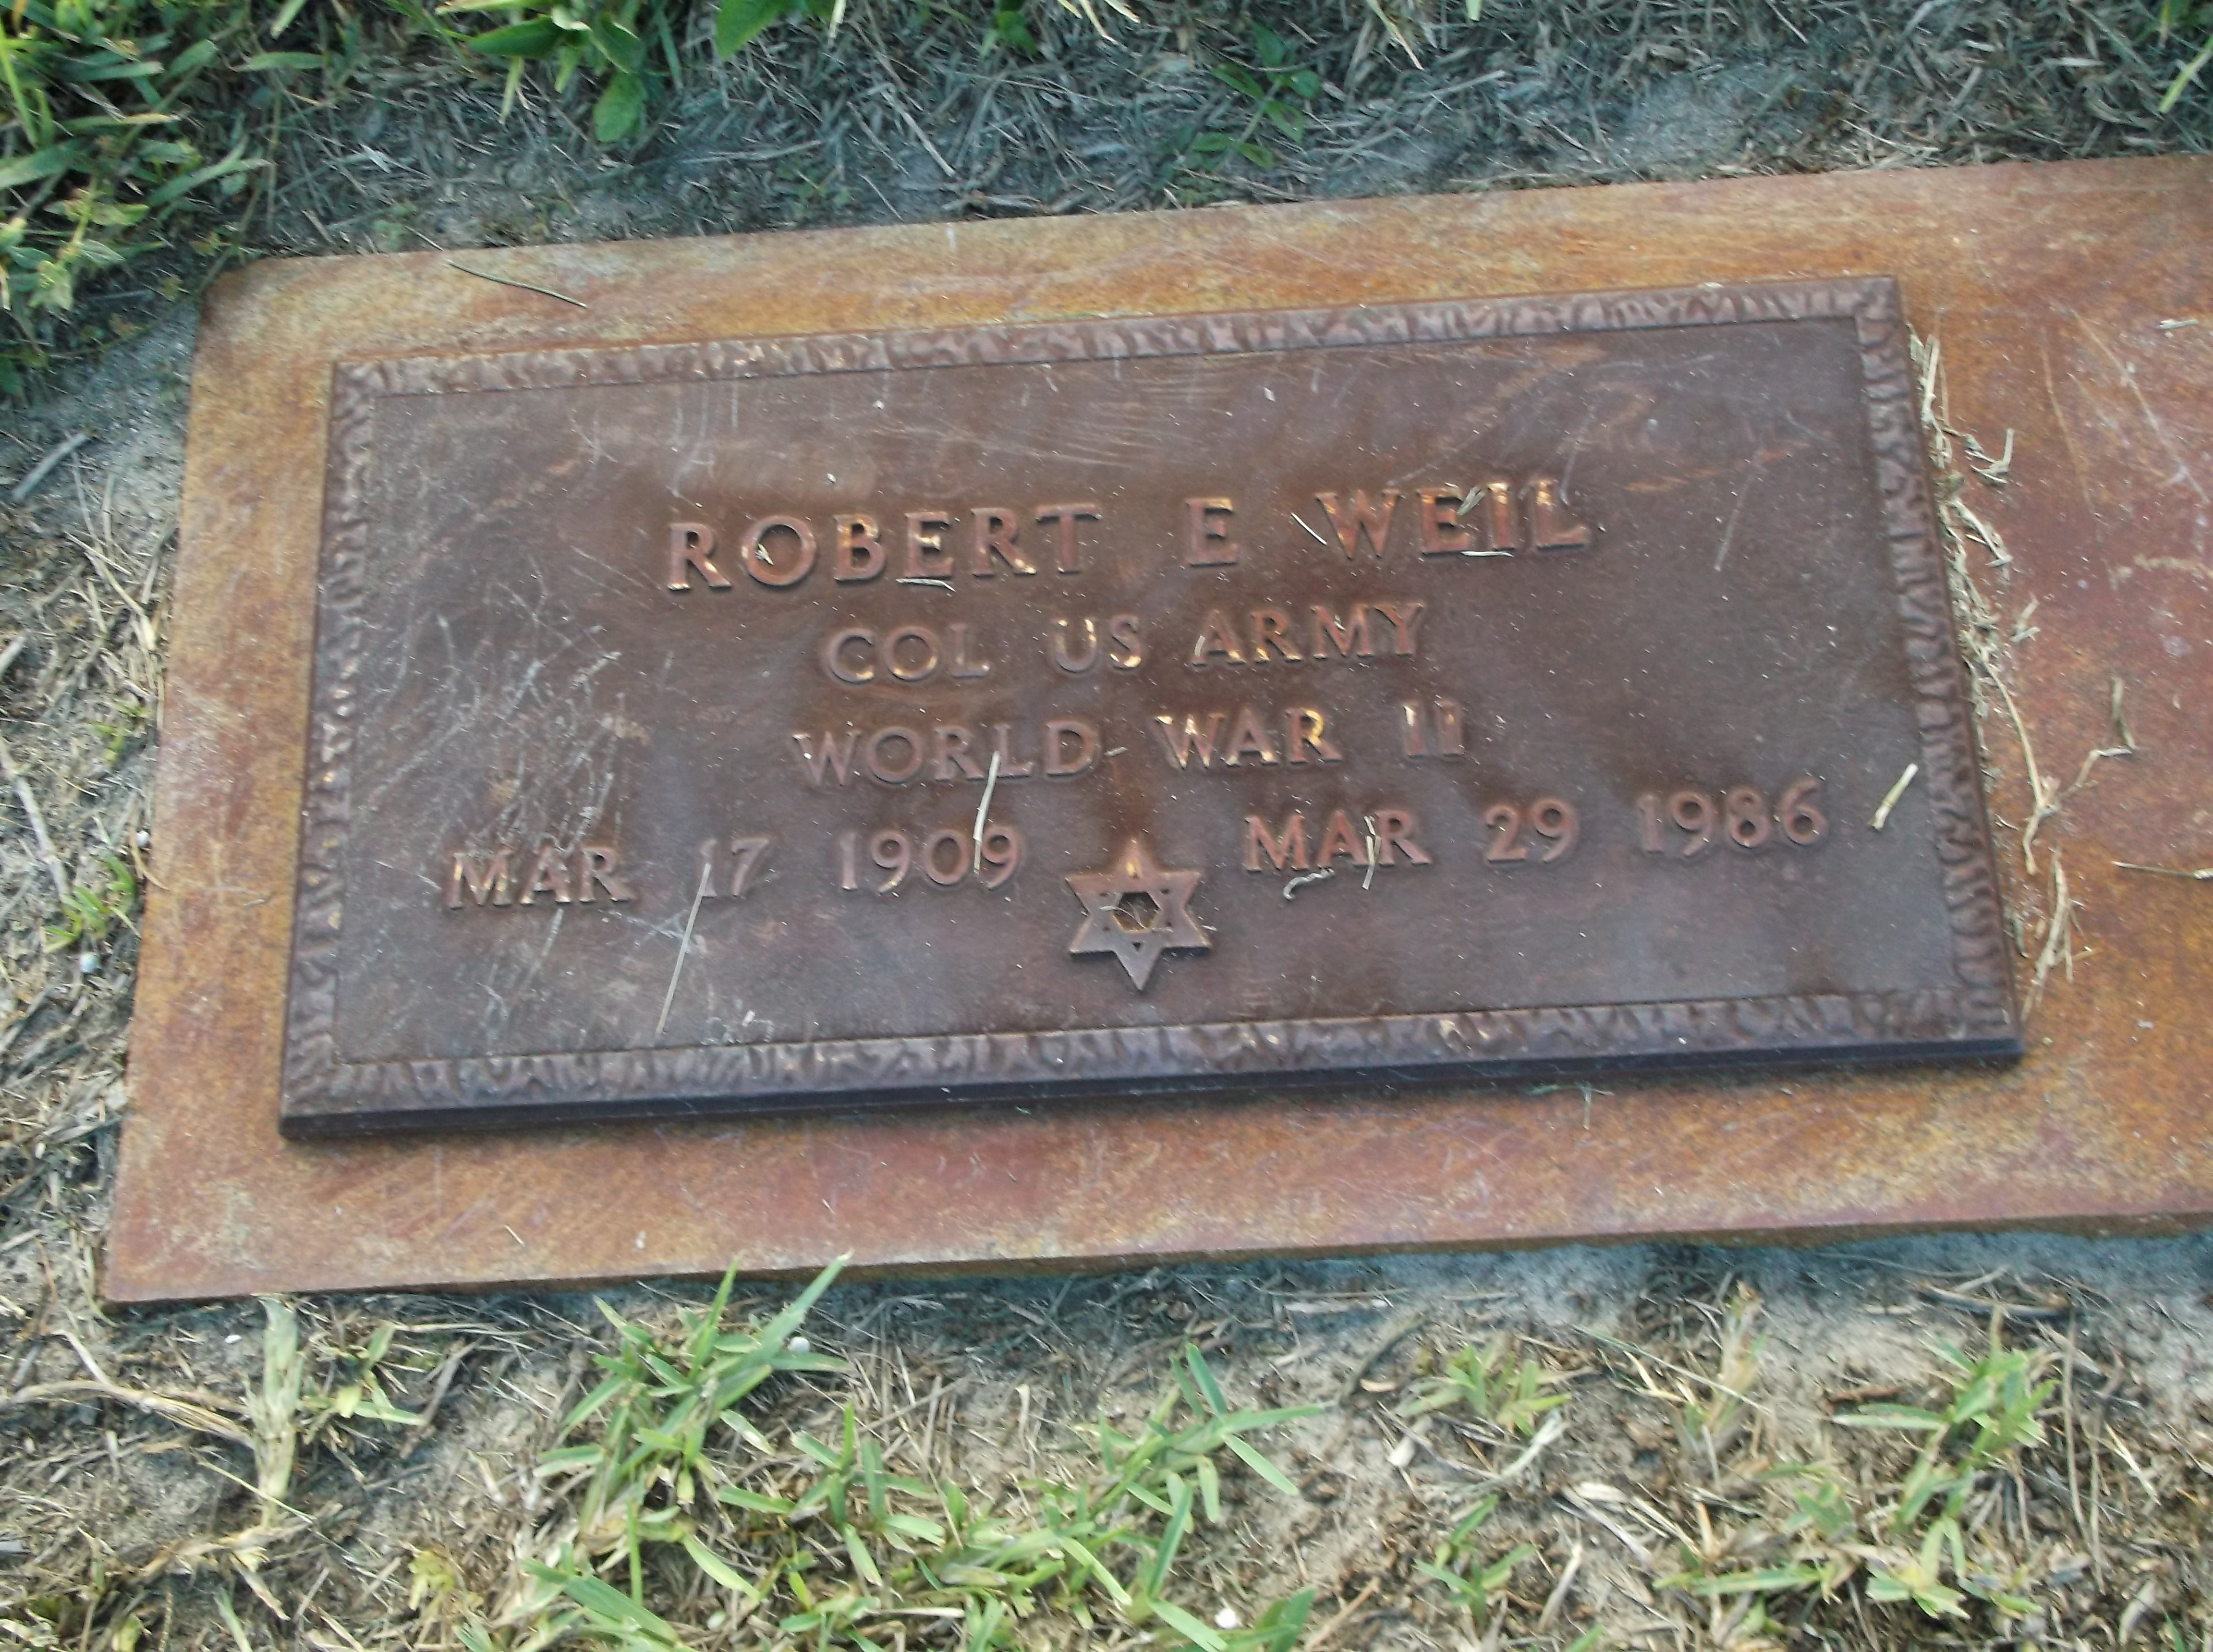 Robert E Weil